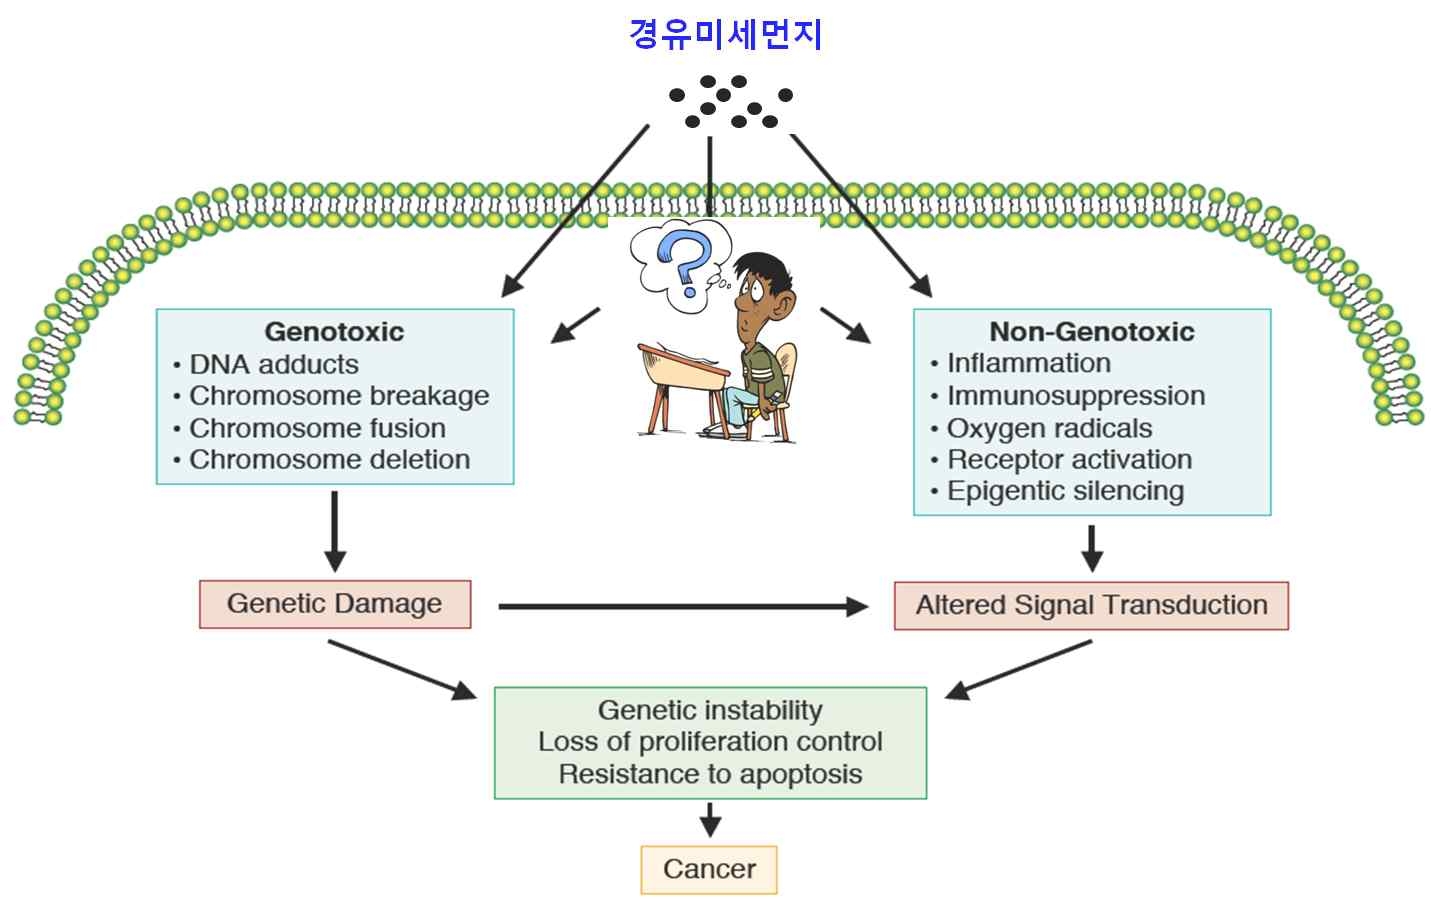 그림 1. 폐암발생에 대한 유전적(genetic) 및 후생유전적(epigenetic/non-genotoxic) 독성 기전